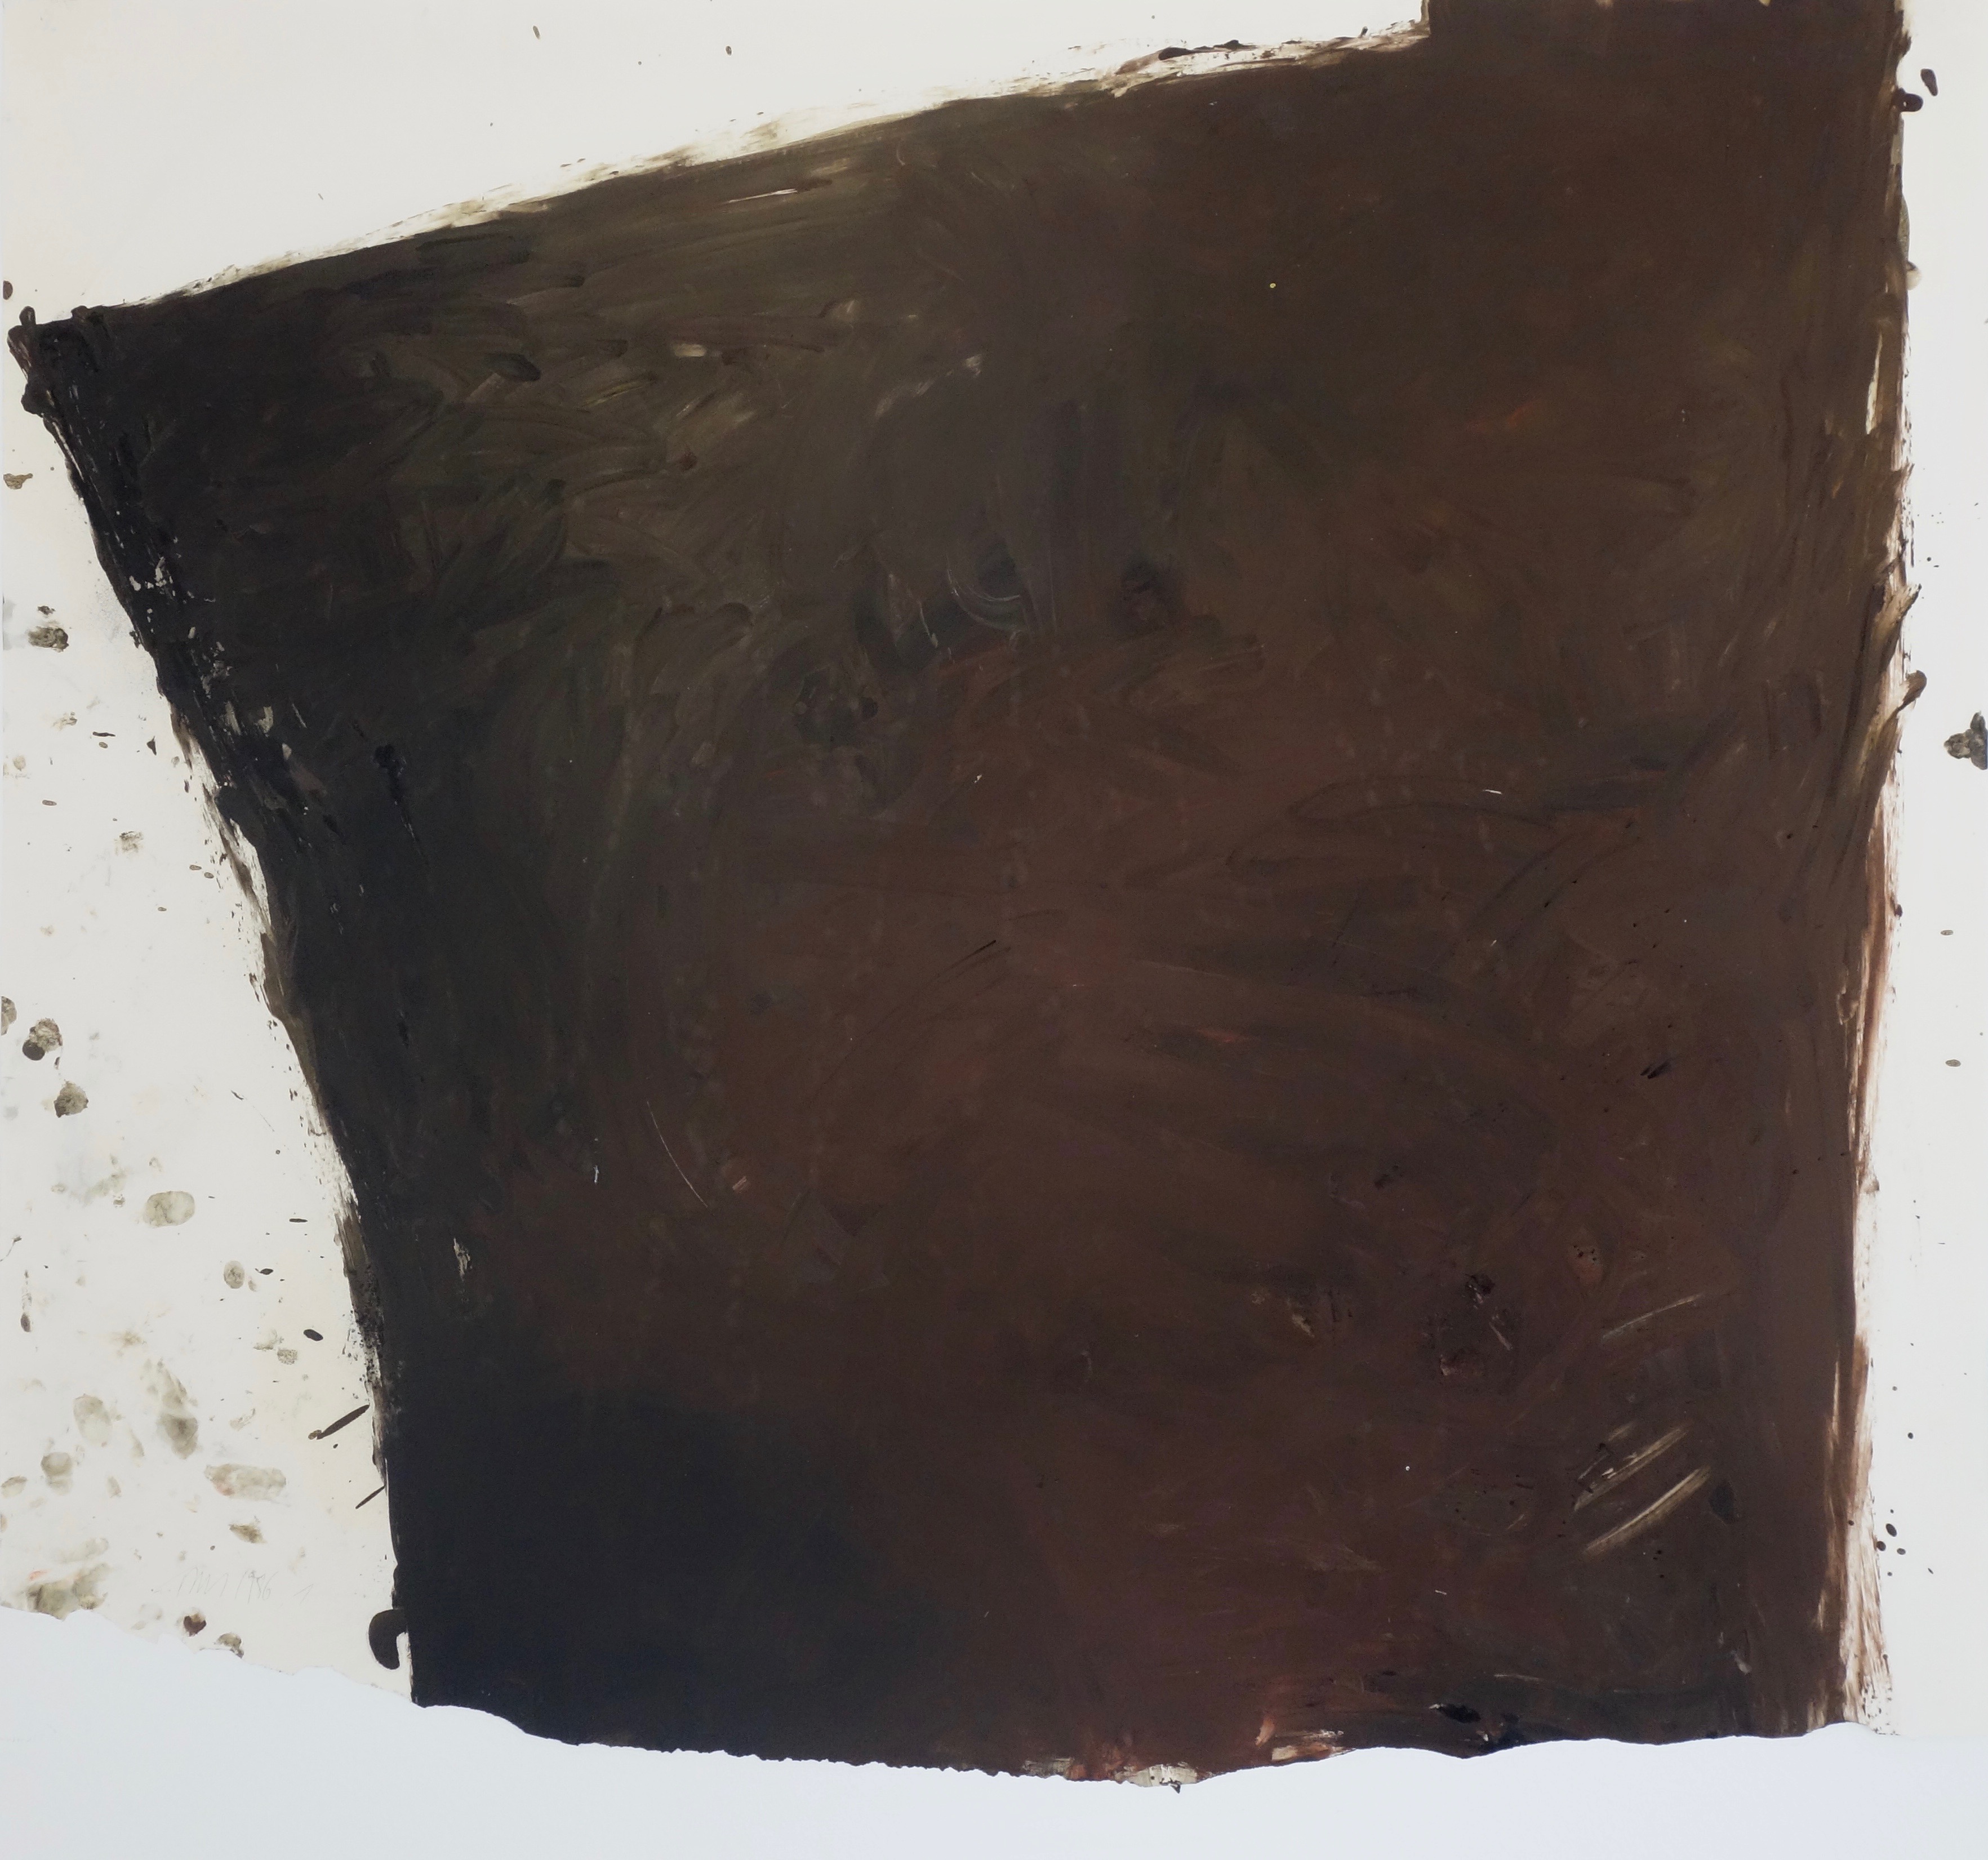 Arbeit auf Papier 1, Eiöltempera und Öl auf Papier, ca. 77,5 x 88 cm, 1986, Erwin Holl